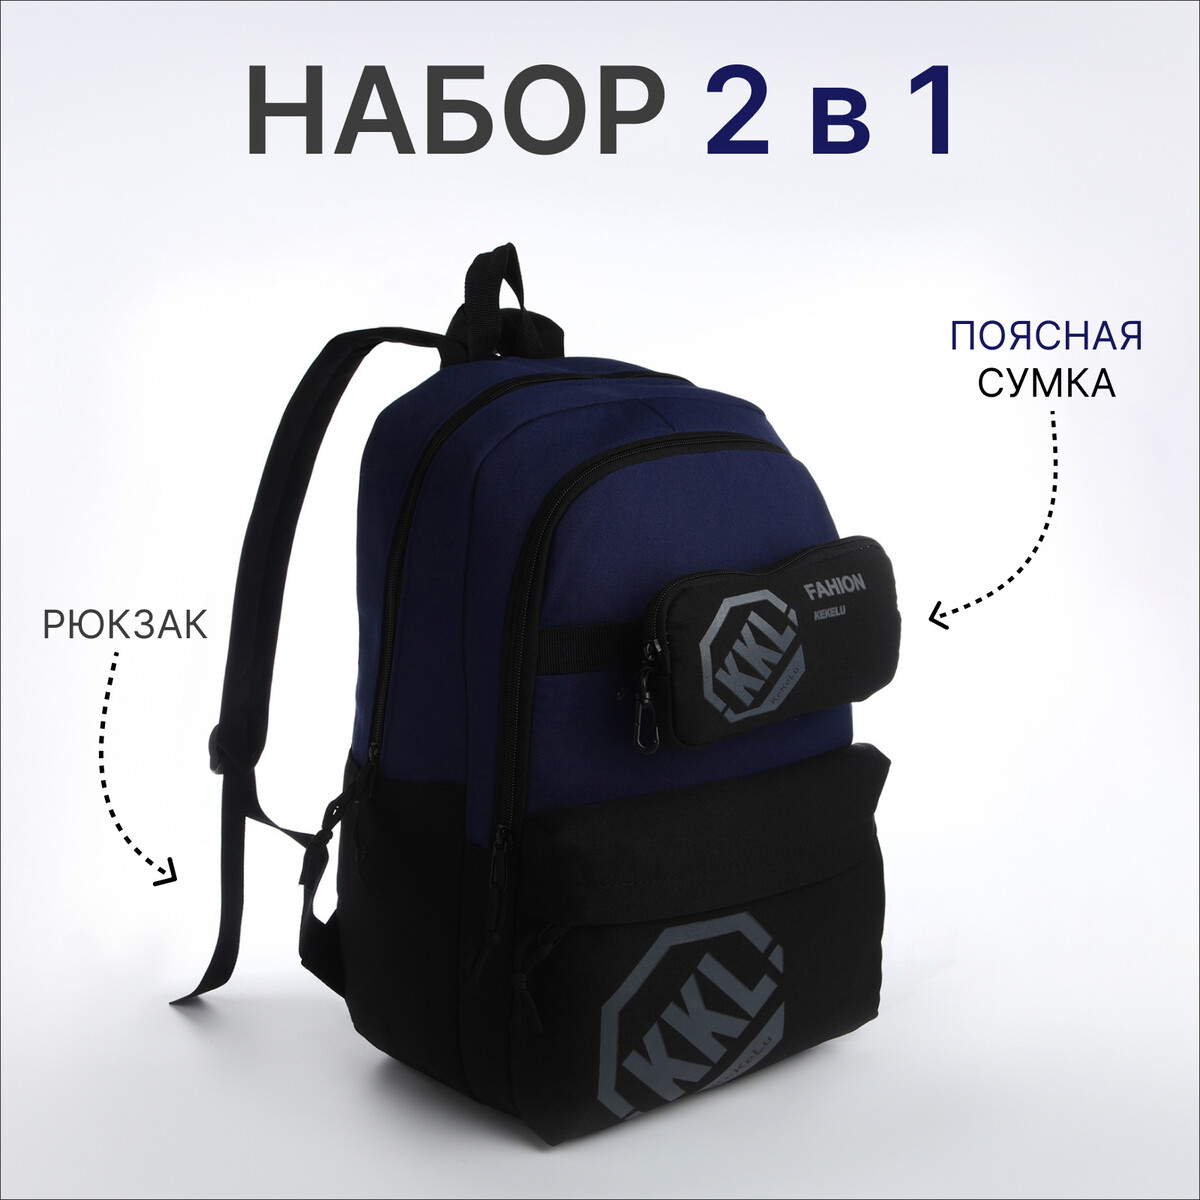 Рюкзак молодежный из текстиля на молнии, 3 кармана, сумка, держатель для чемодана, цвет черный/синий рюкзак молодежный из текстиля на молнии 3 кармана сумка держатель для чемодана белый